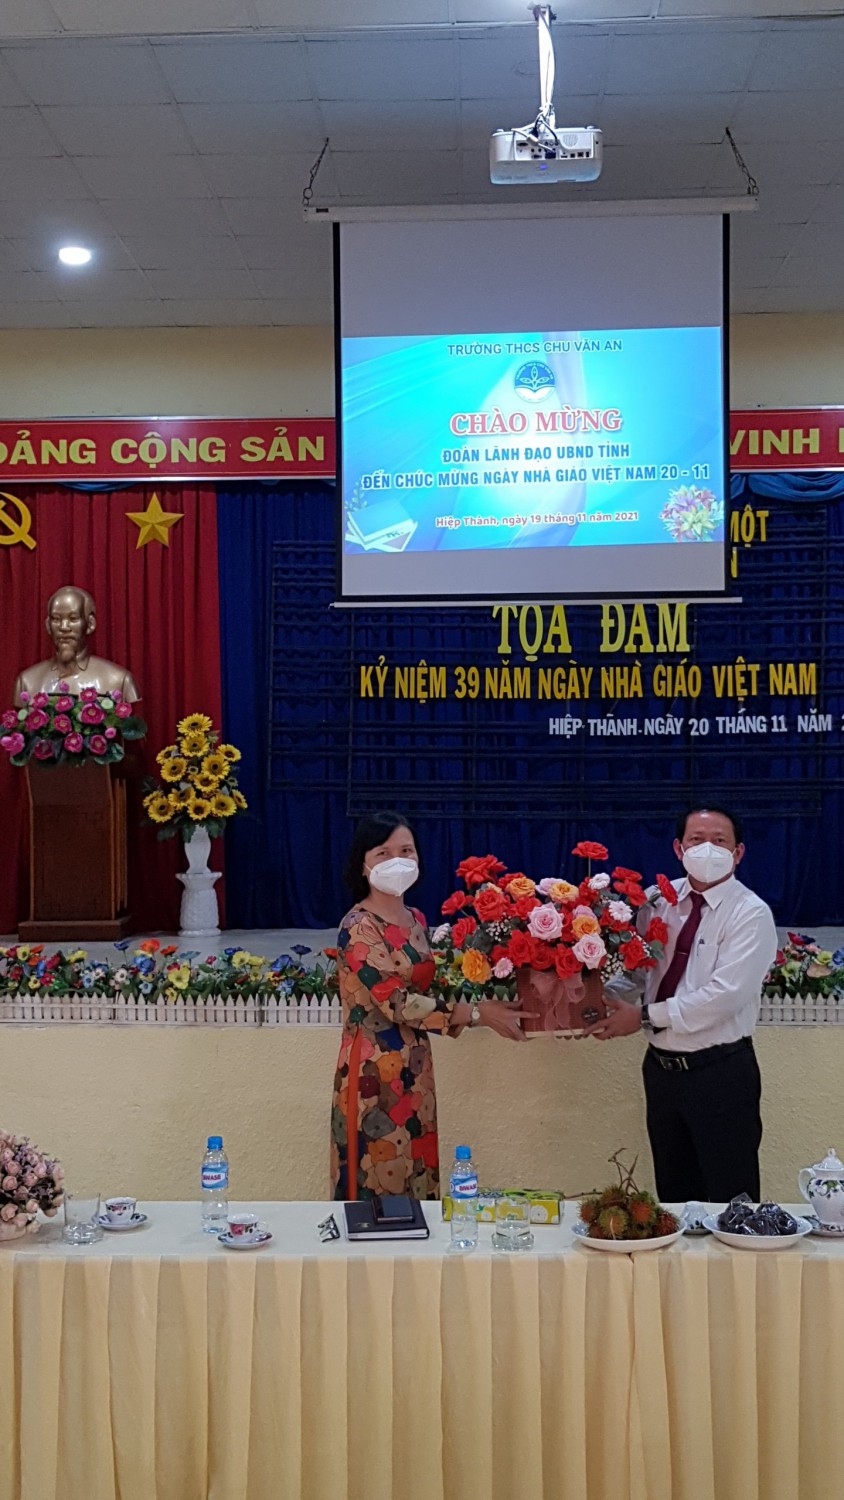 Trường THCS Chu Văn An nhiệt liệt chào mừng đoàn lãnh đạo UBND tỉnh Bình Dương đến chúc mừng Ngày Nhà giáo Việt Nam 20-11-2021